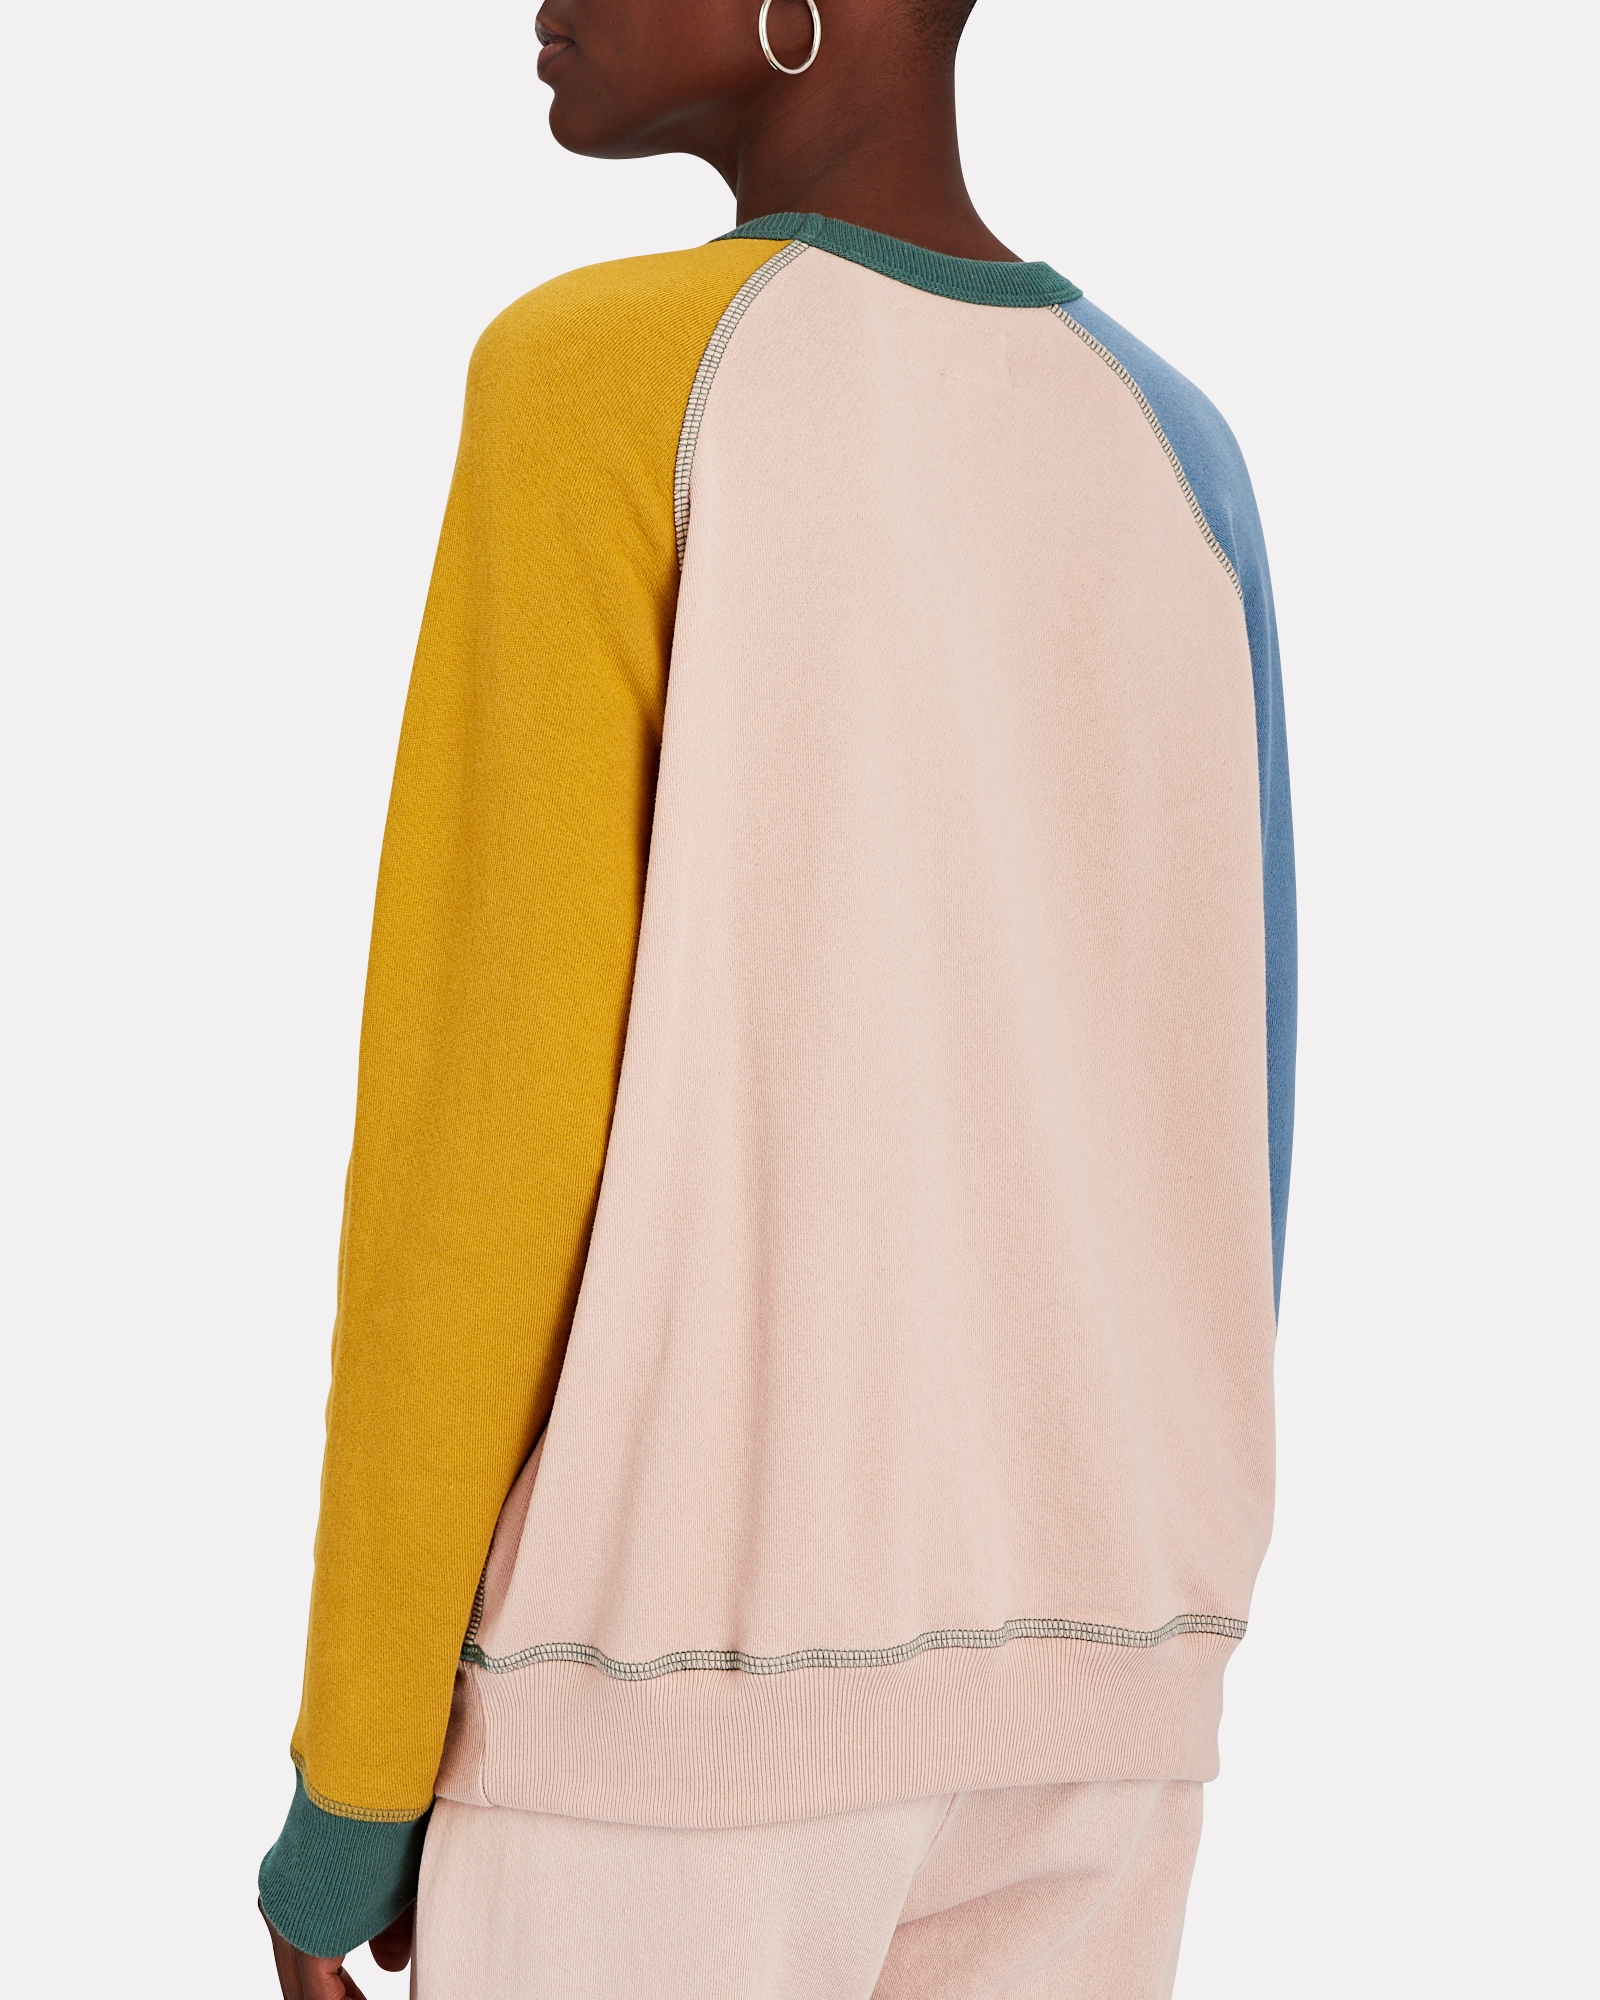 The College Colorblock Sweatshirt